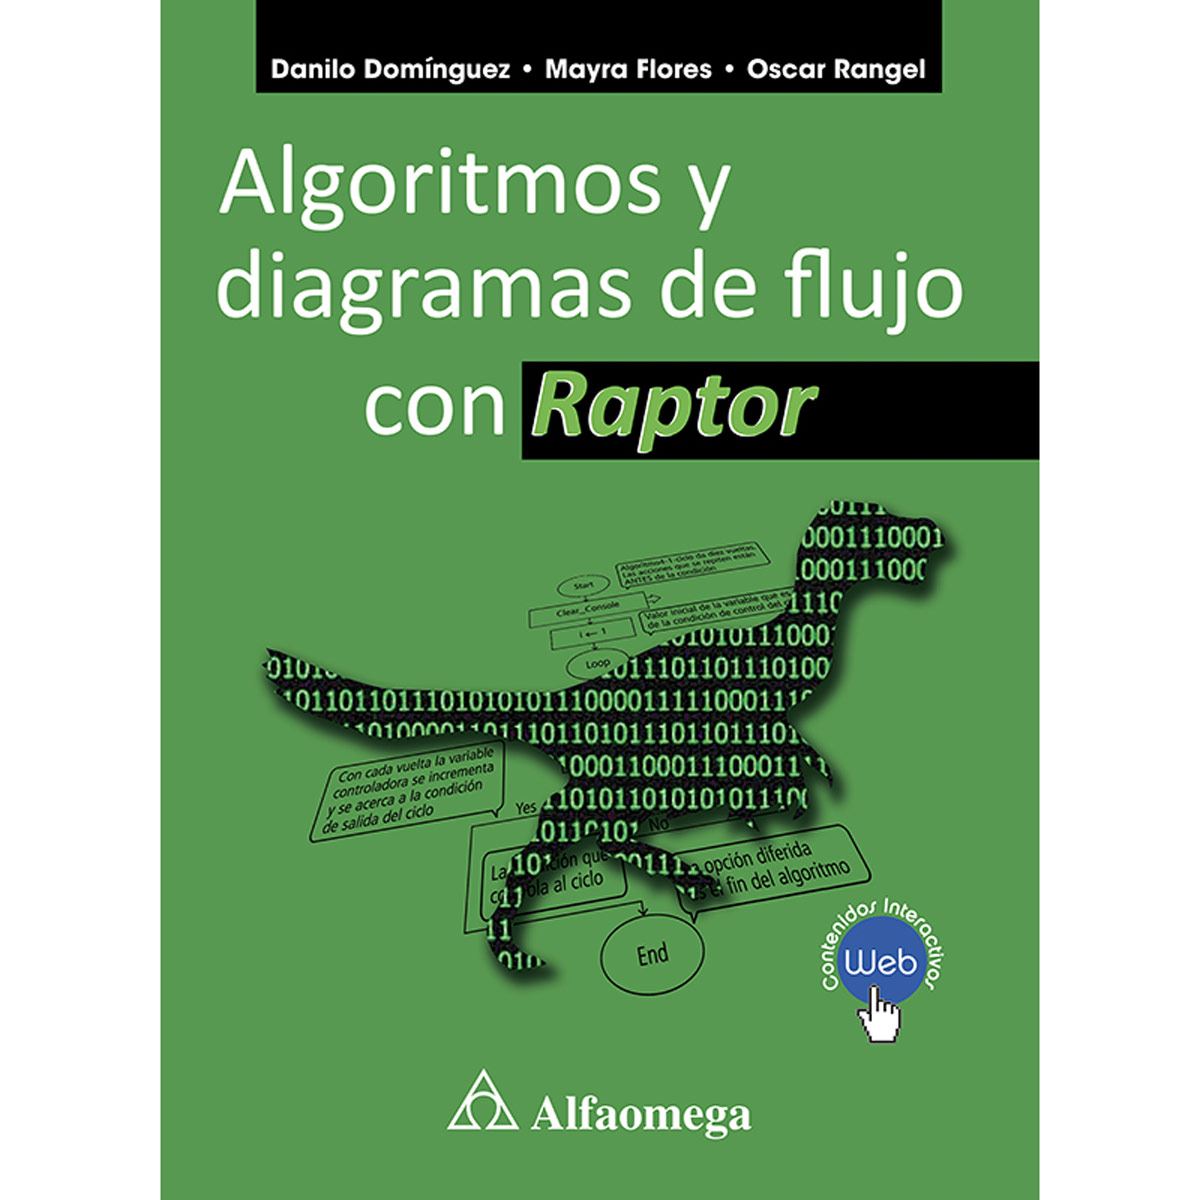 Algoritmos y diagramas de flujo con raptor